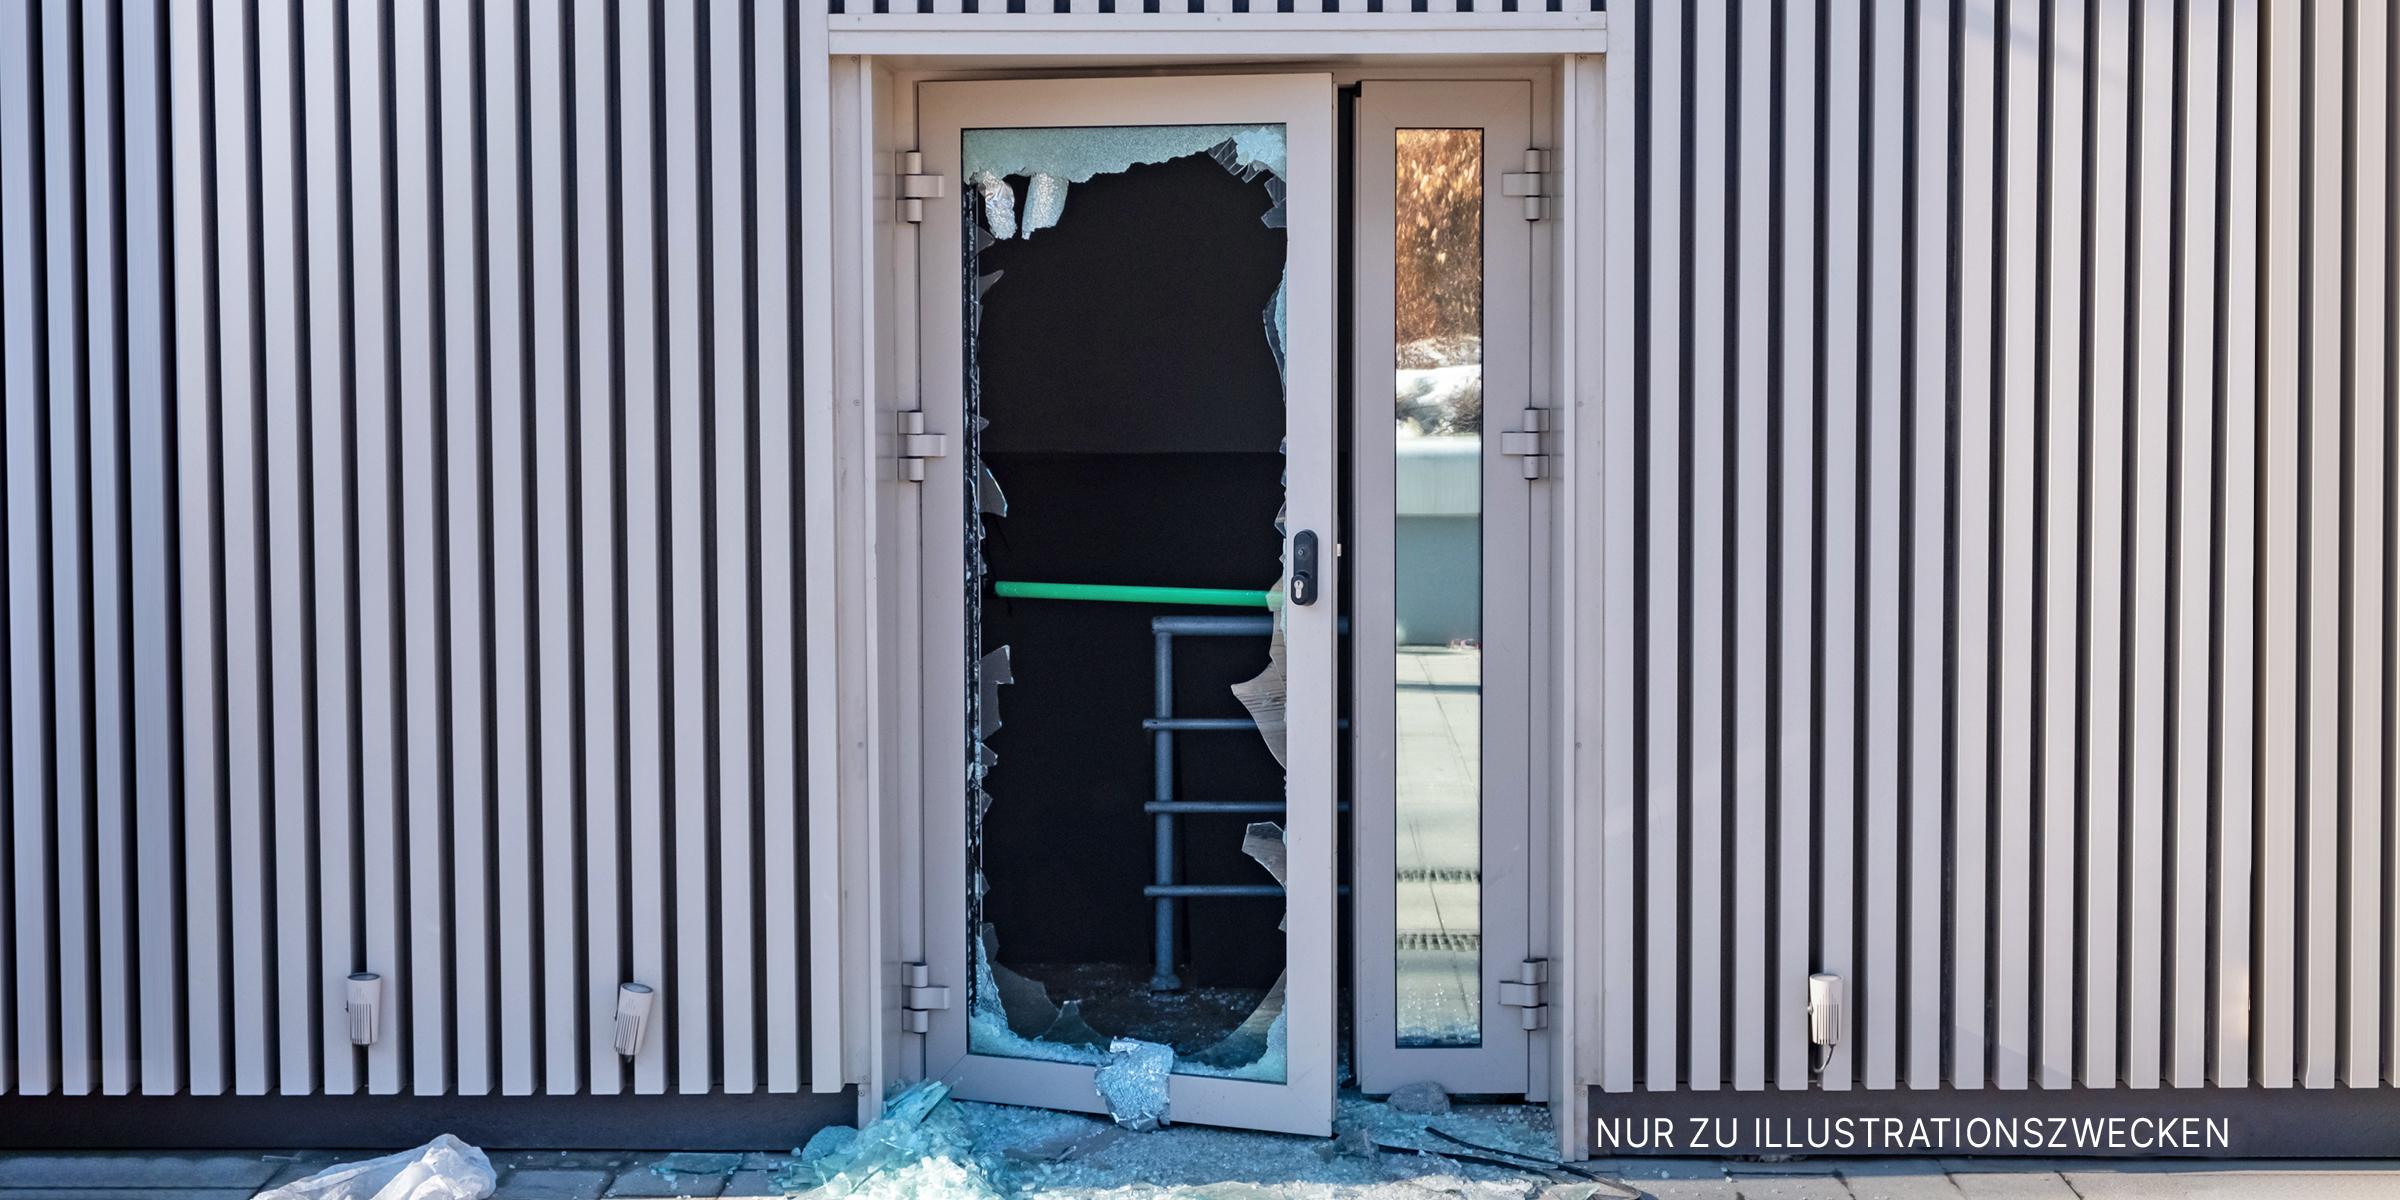 Eine kaputte Tür | Quelle: Shutterstock